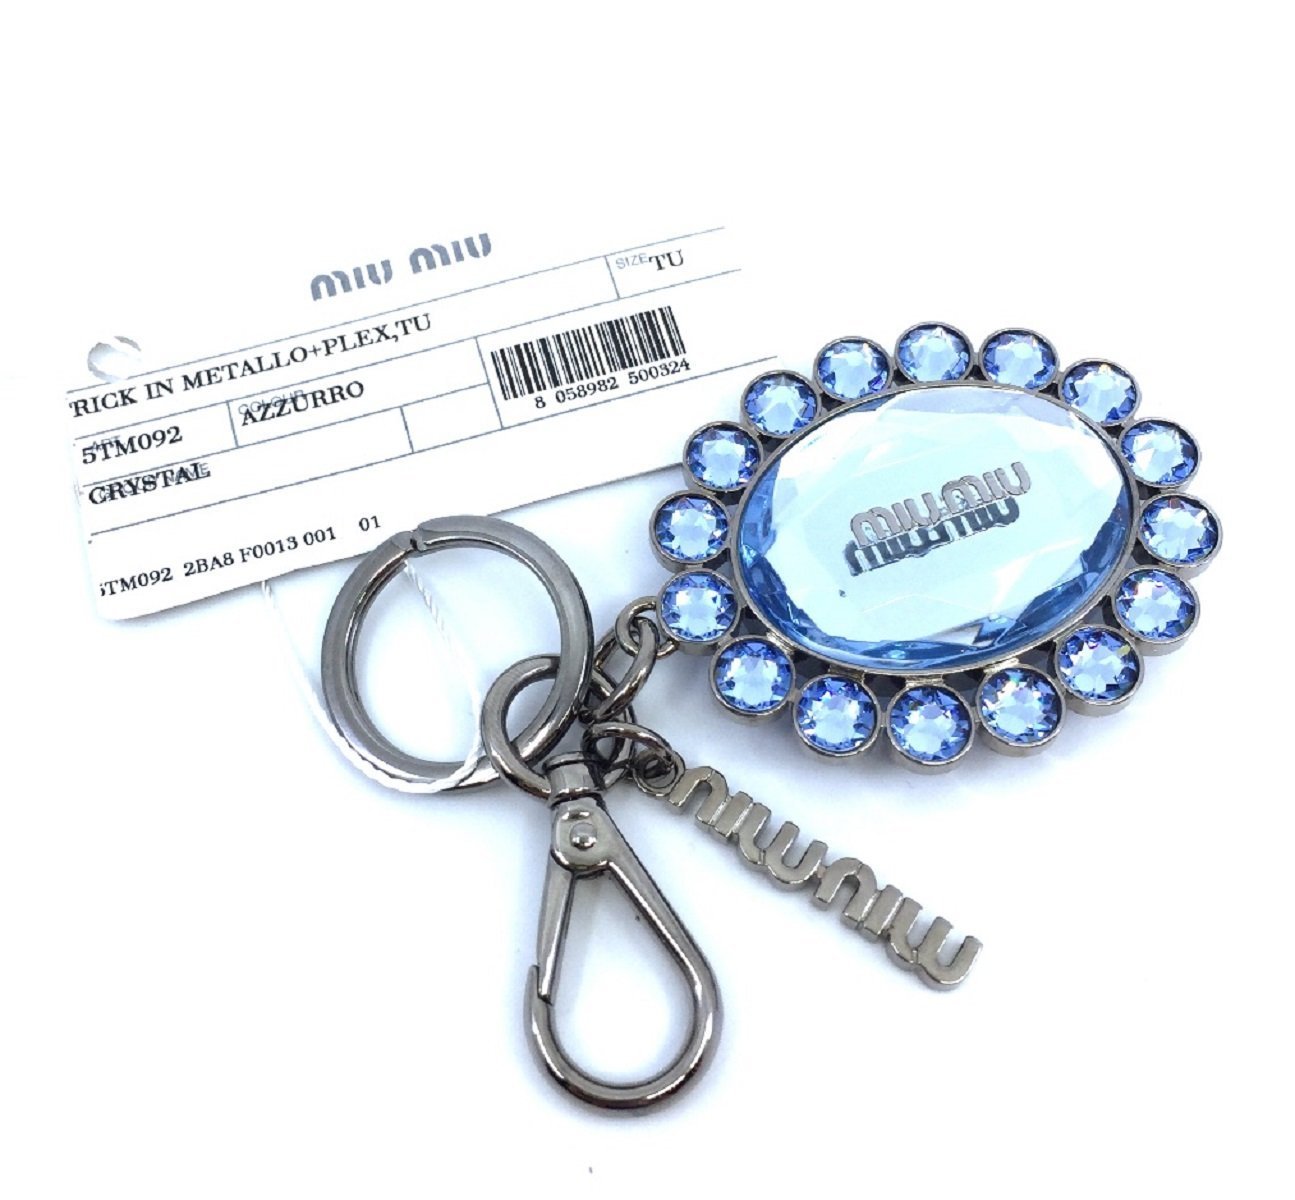 Miu Miu Trick Metallo Oval Crystal Blue Plex Charm Key Chain Key Ring 5TM092 - LUXURYMRKT